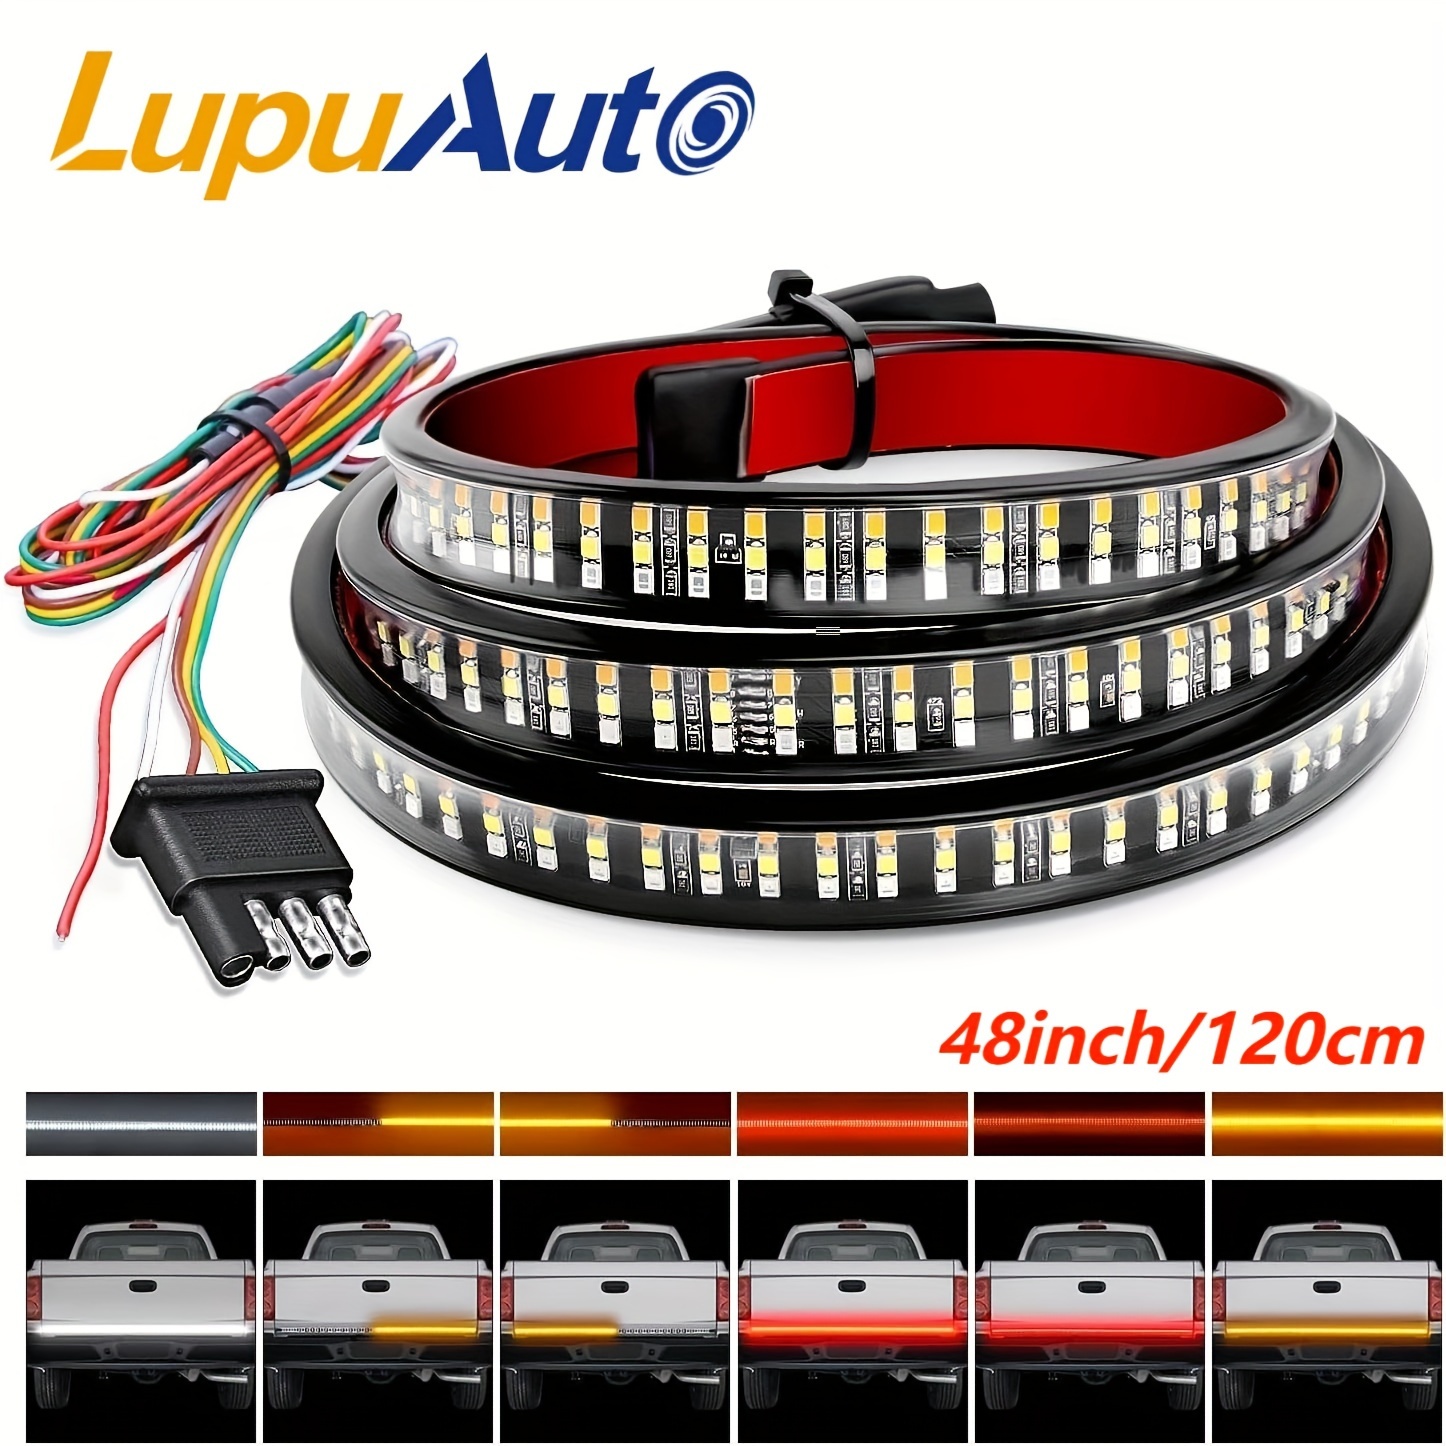 Auto Atmosphärenlicht USB Aufladung siebenfarbige LED Dekoration im Auto.